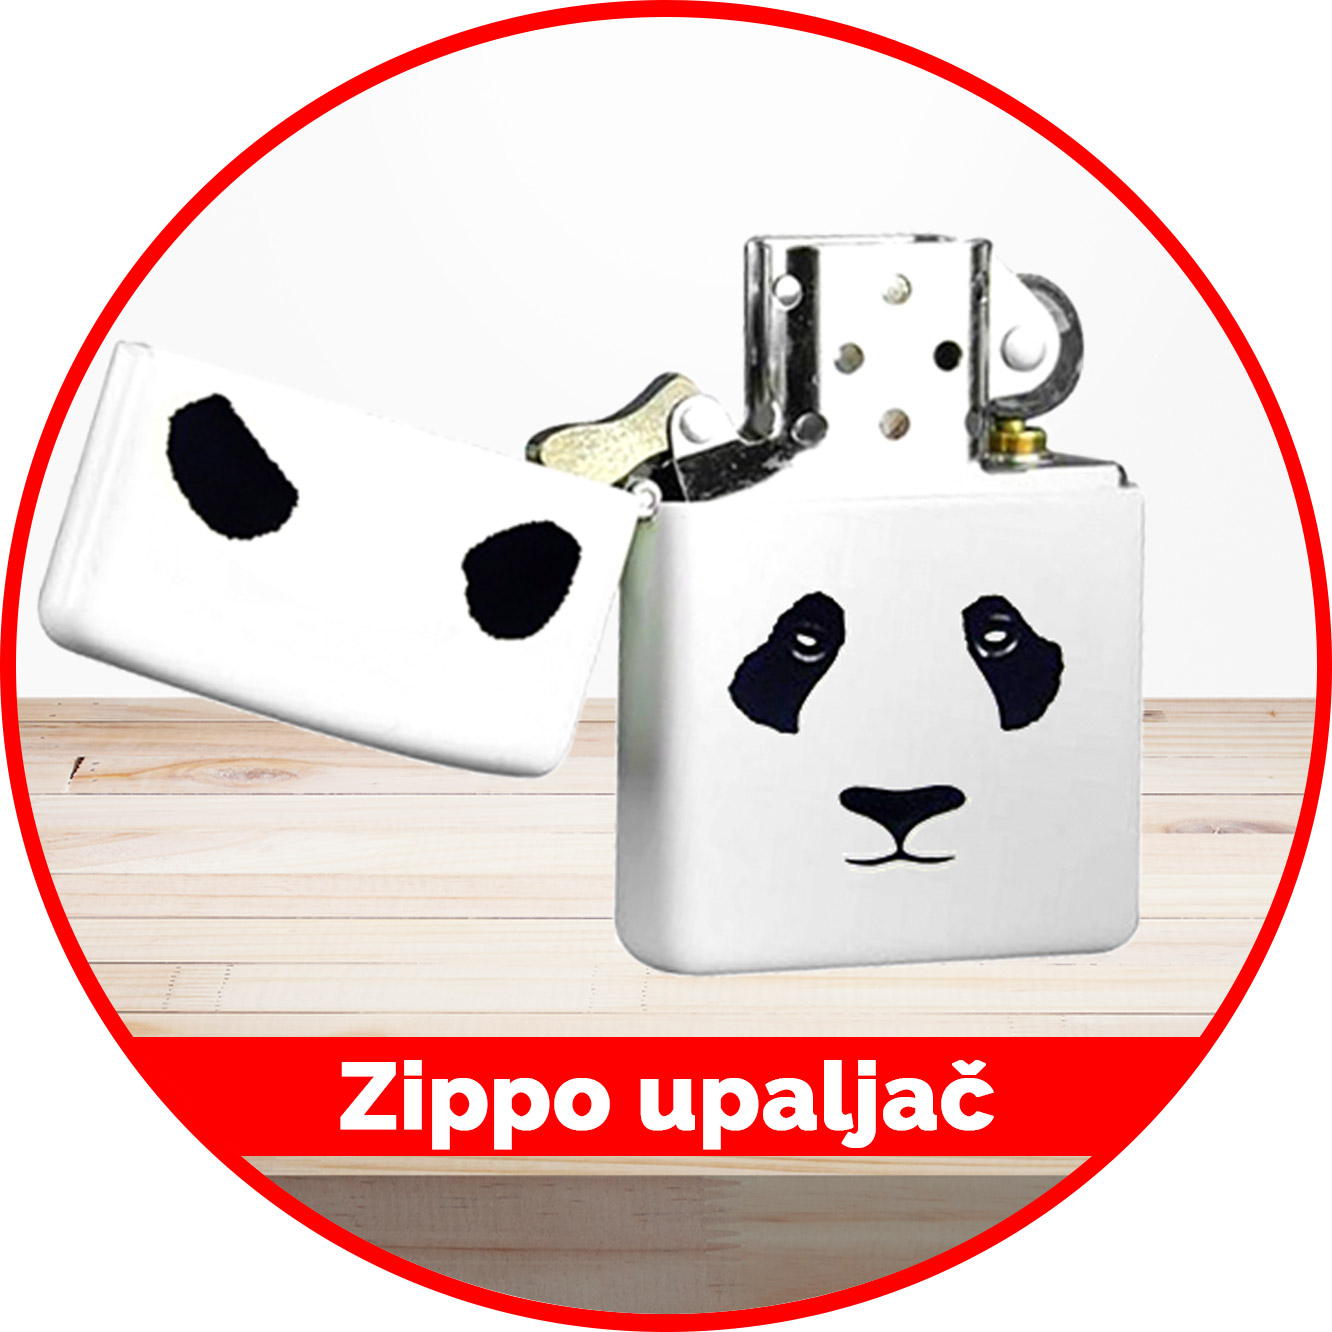 Zippo-upaljač